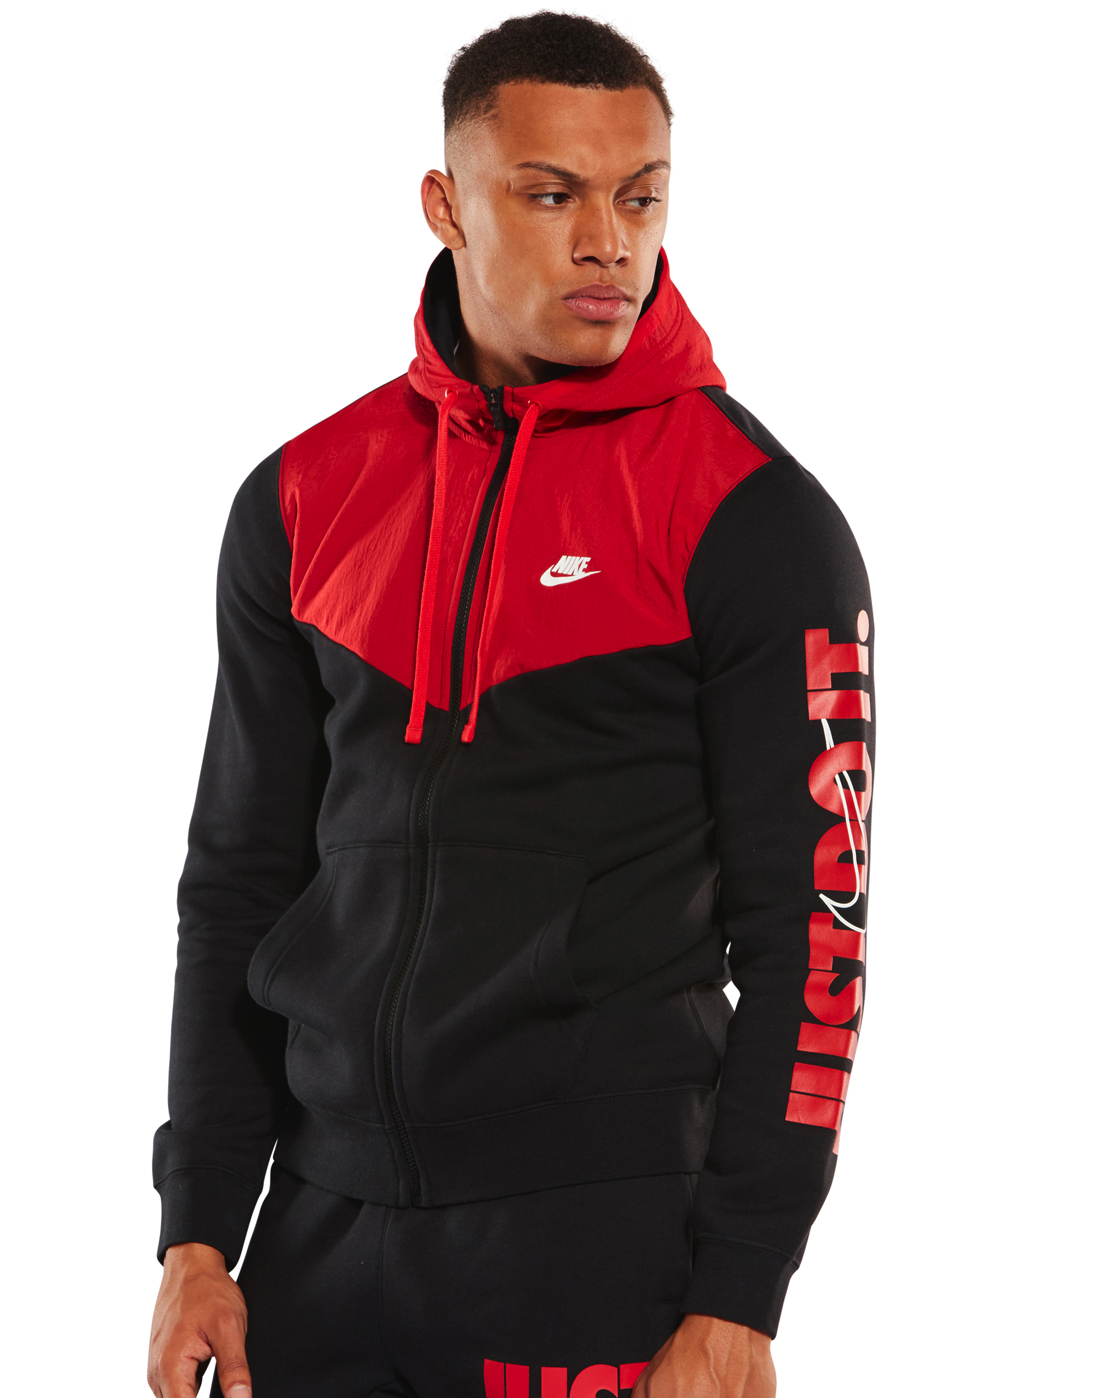 black and red nike zip up hoodie